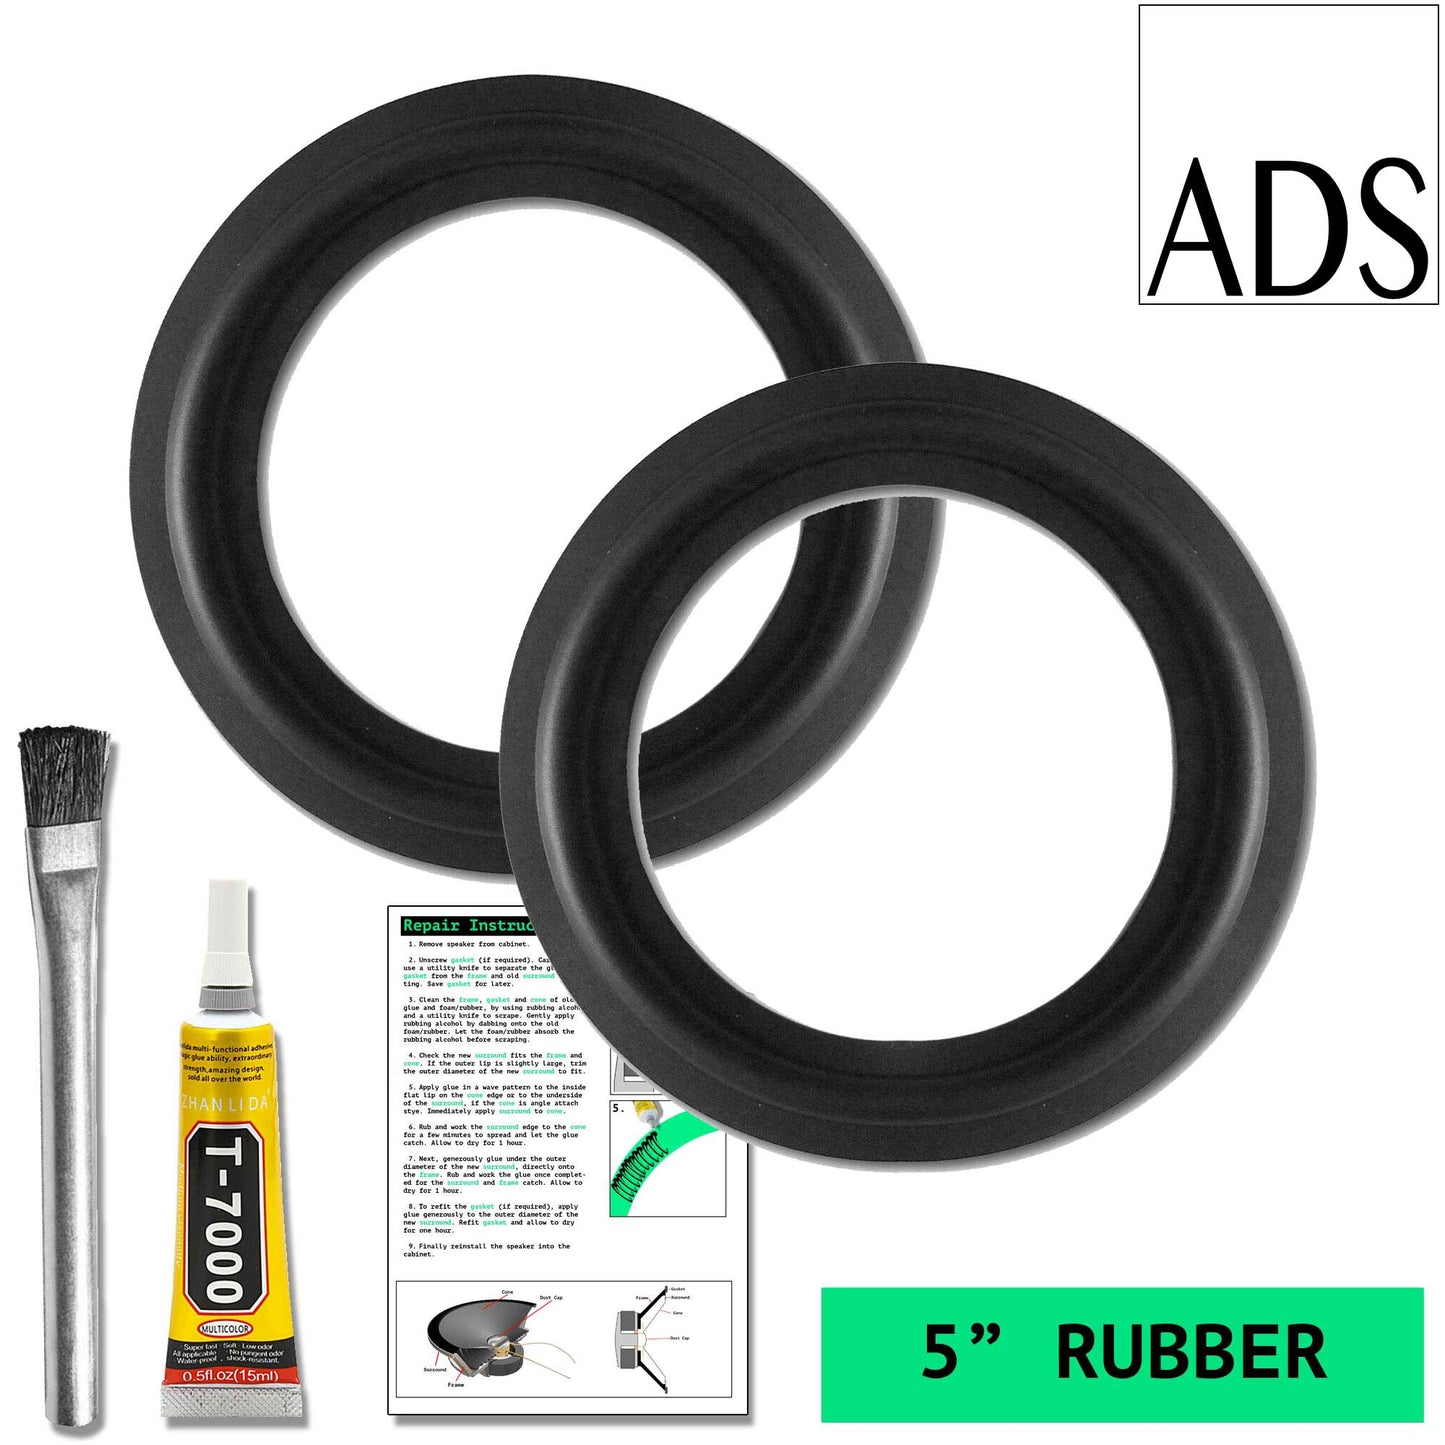 ADS 5" Rubber Repair Kit